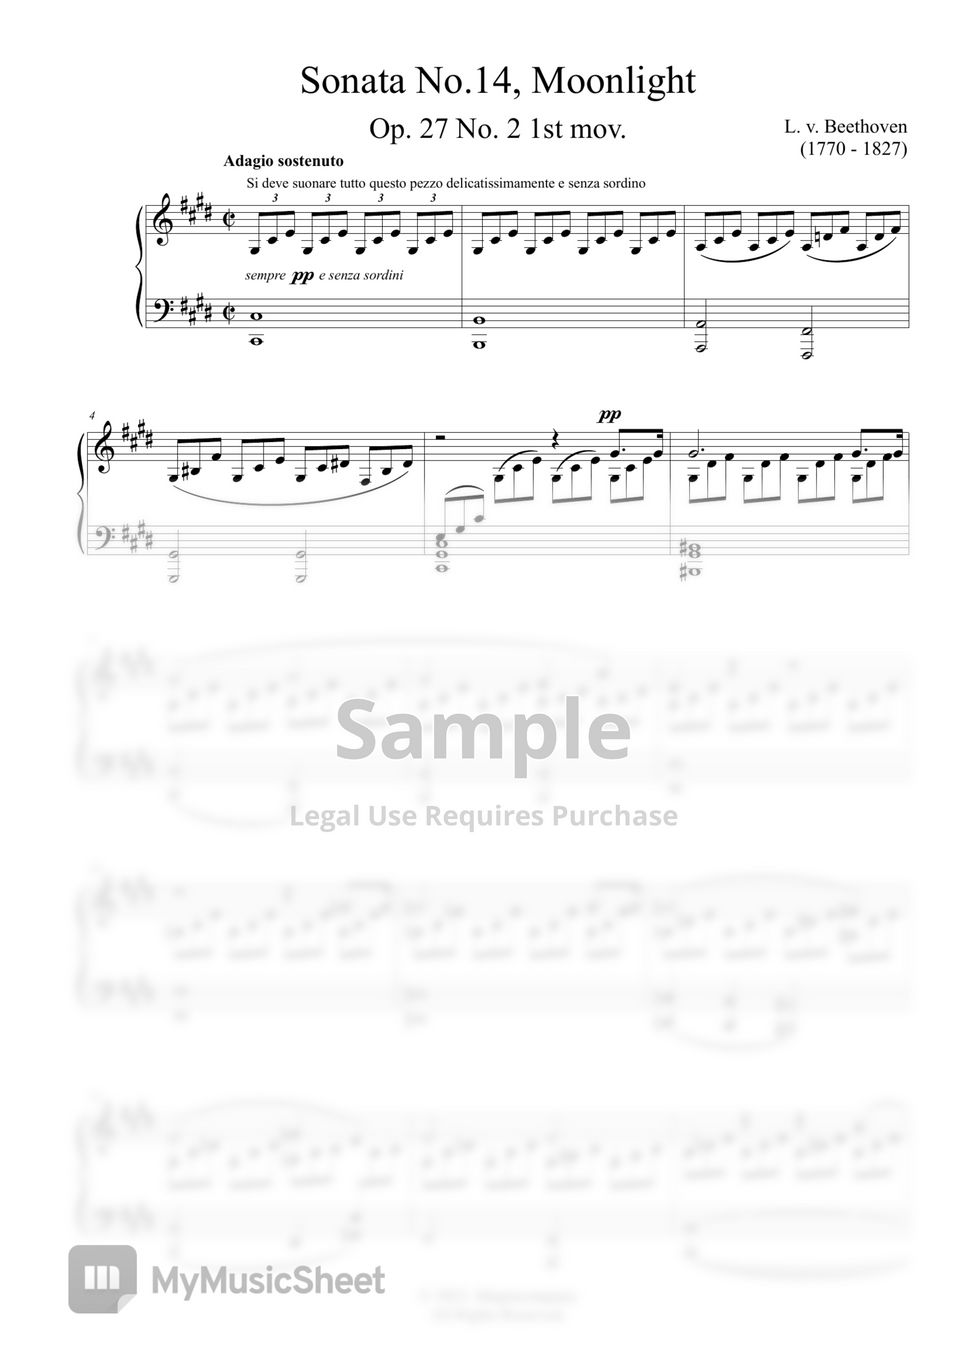 L. v. Beethoven - Sonata Moonlight by MyMusicSheet Official